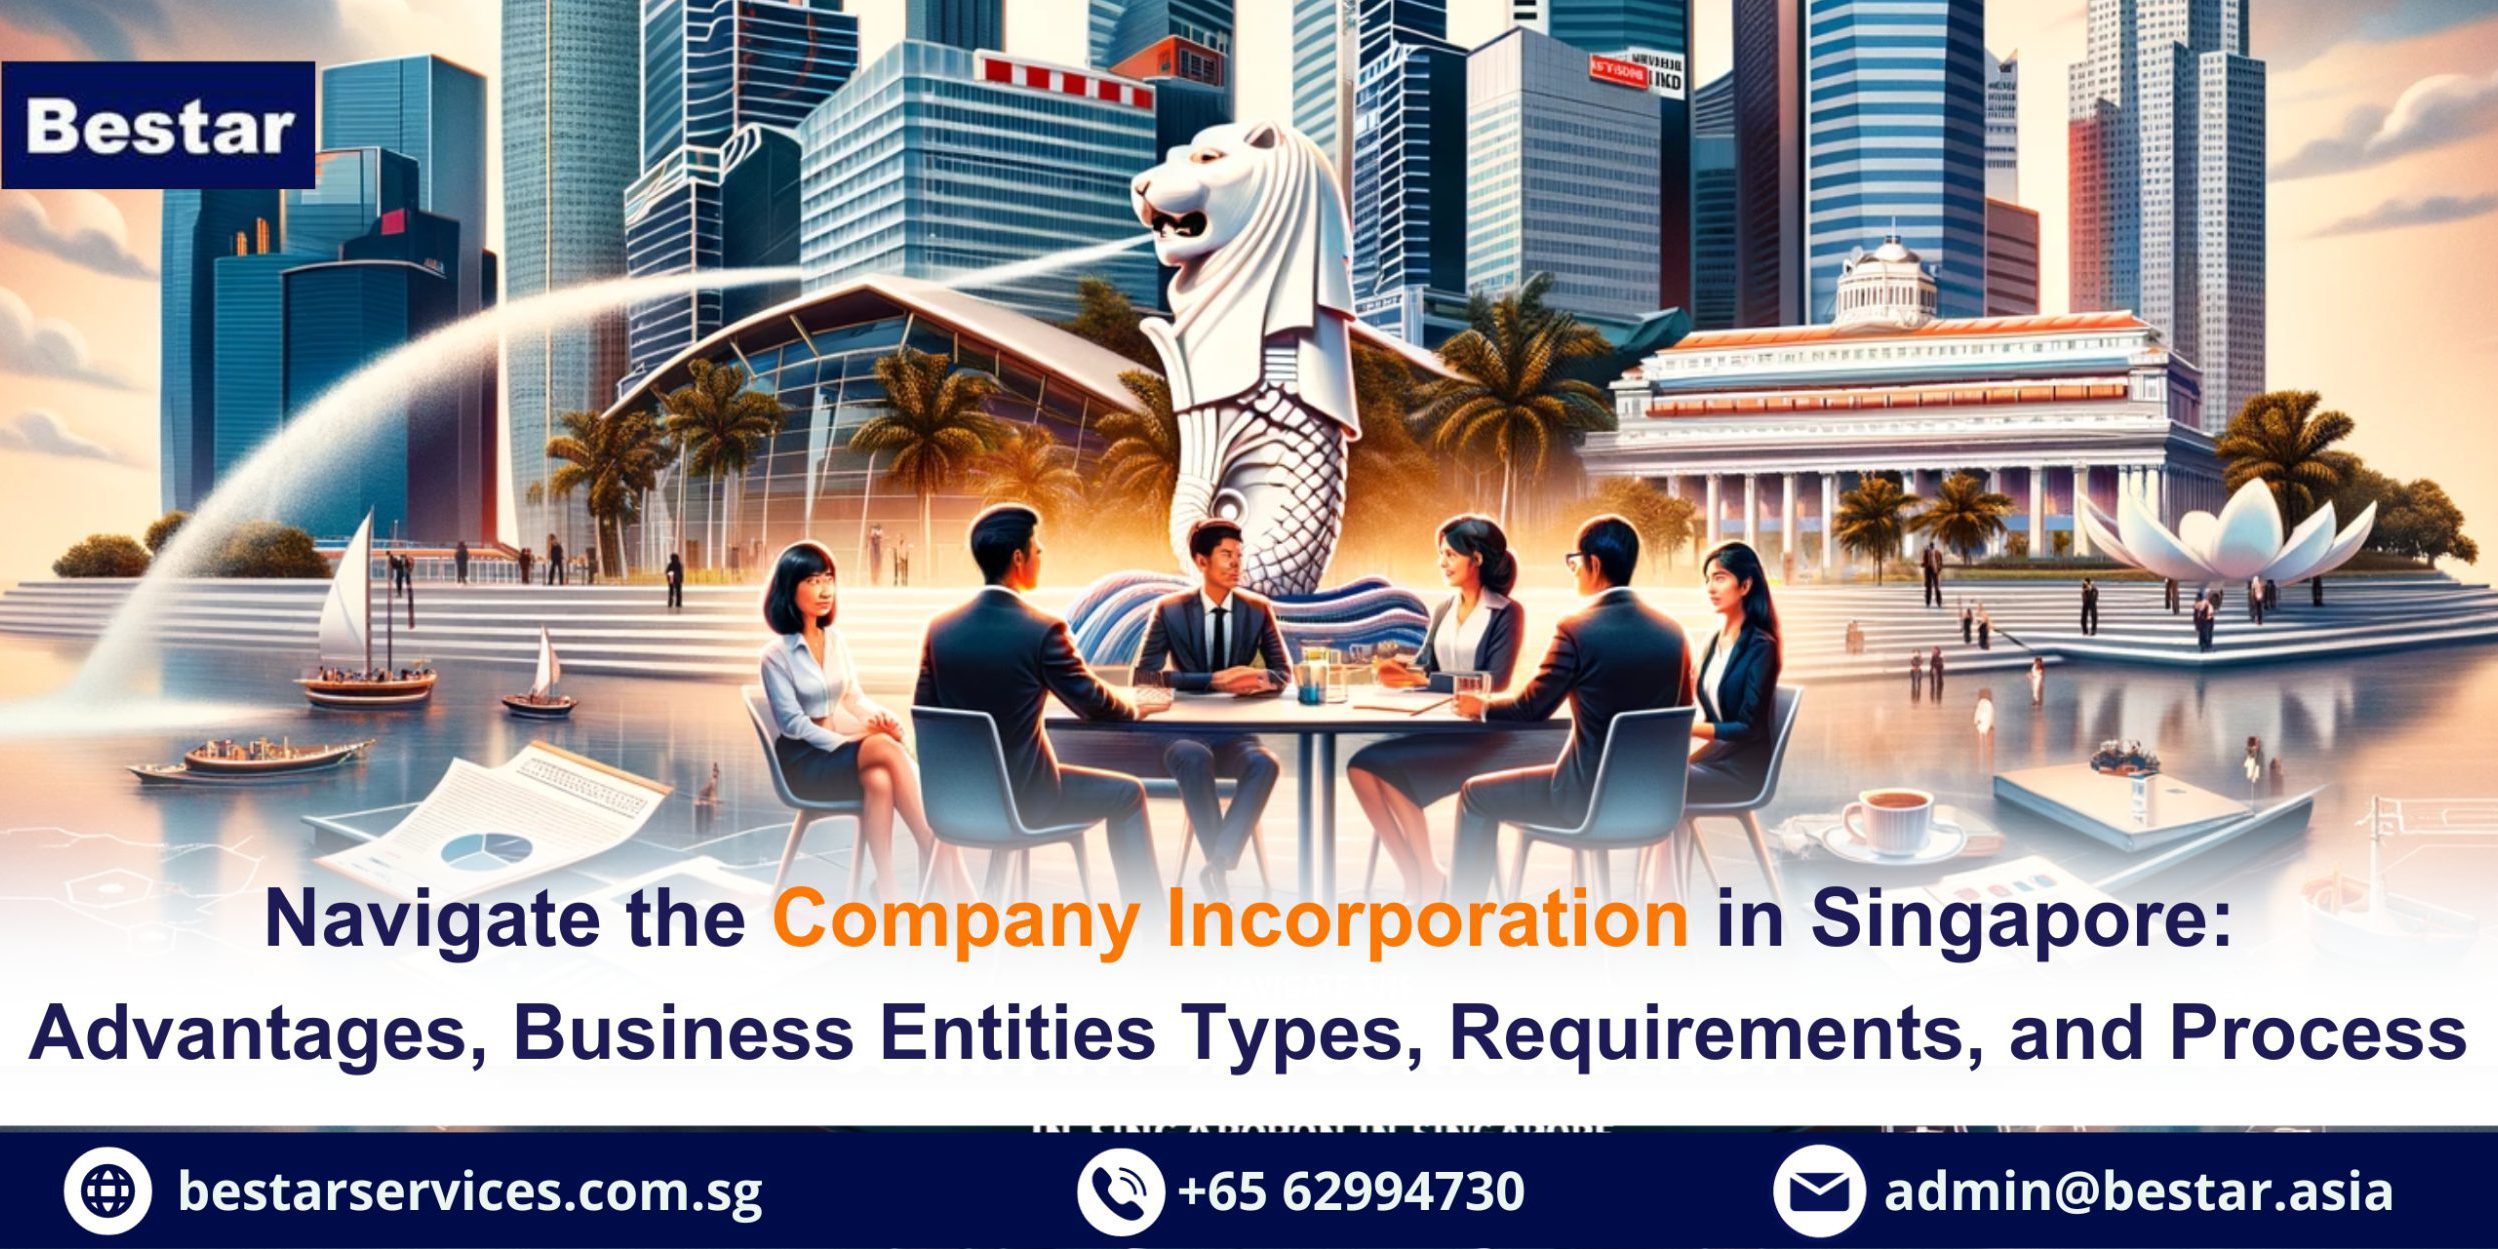 Навігація щодо реєстрації компанії в Сінгапурі, переваги, типи суб'єктів господарювання, вимоги та процес